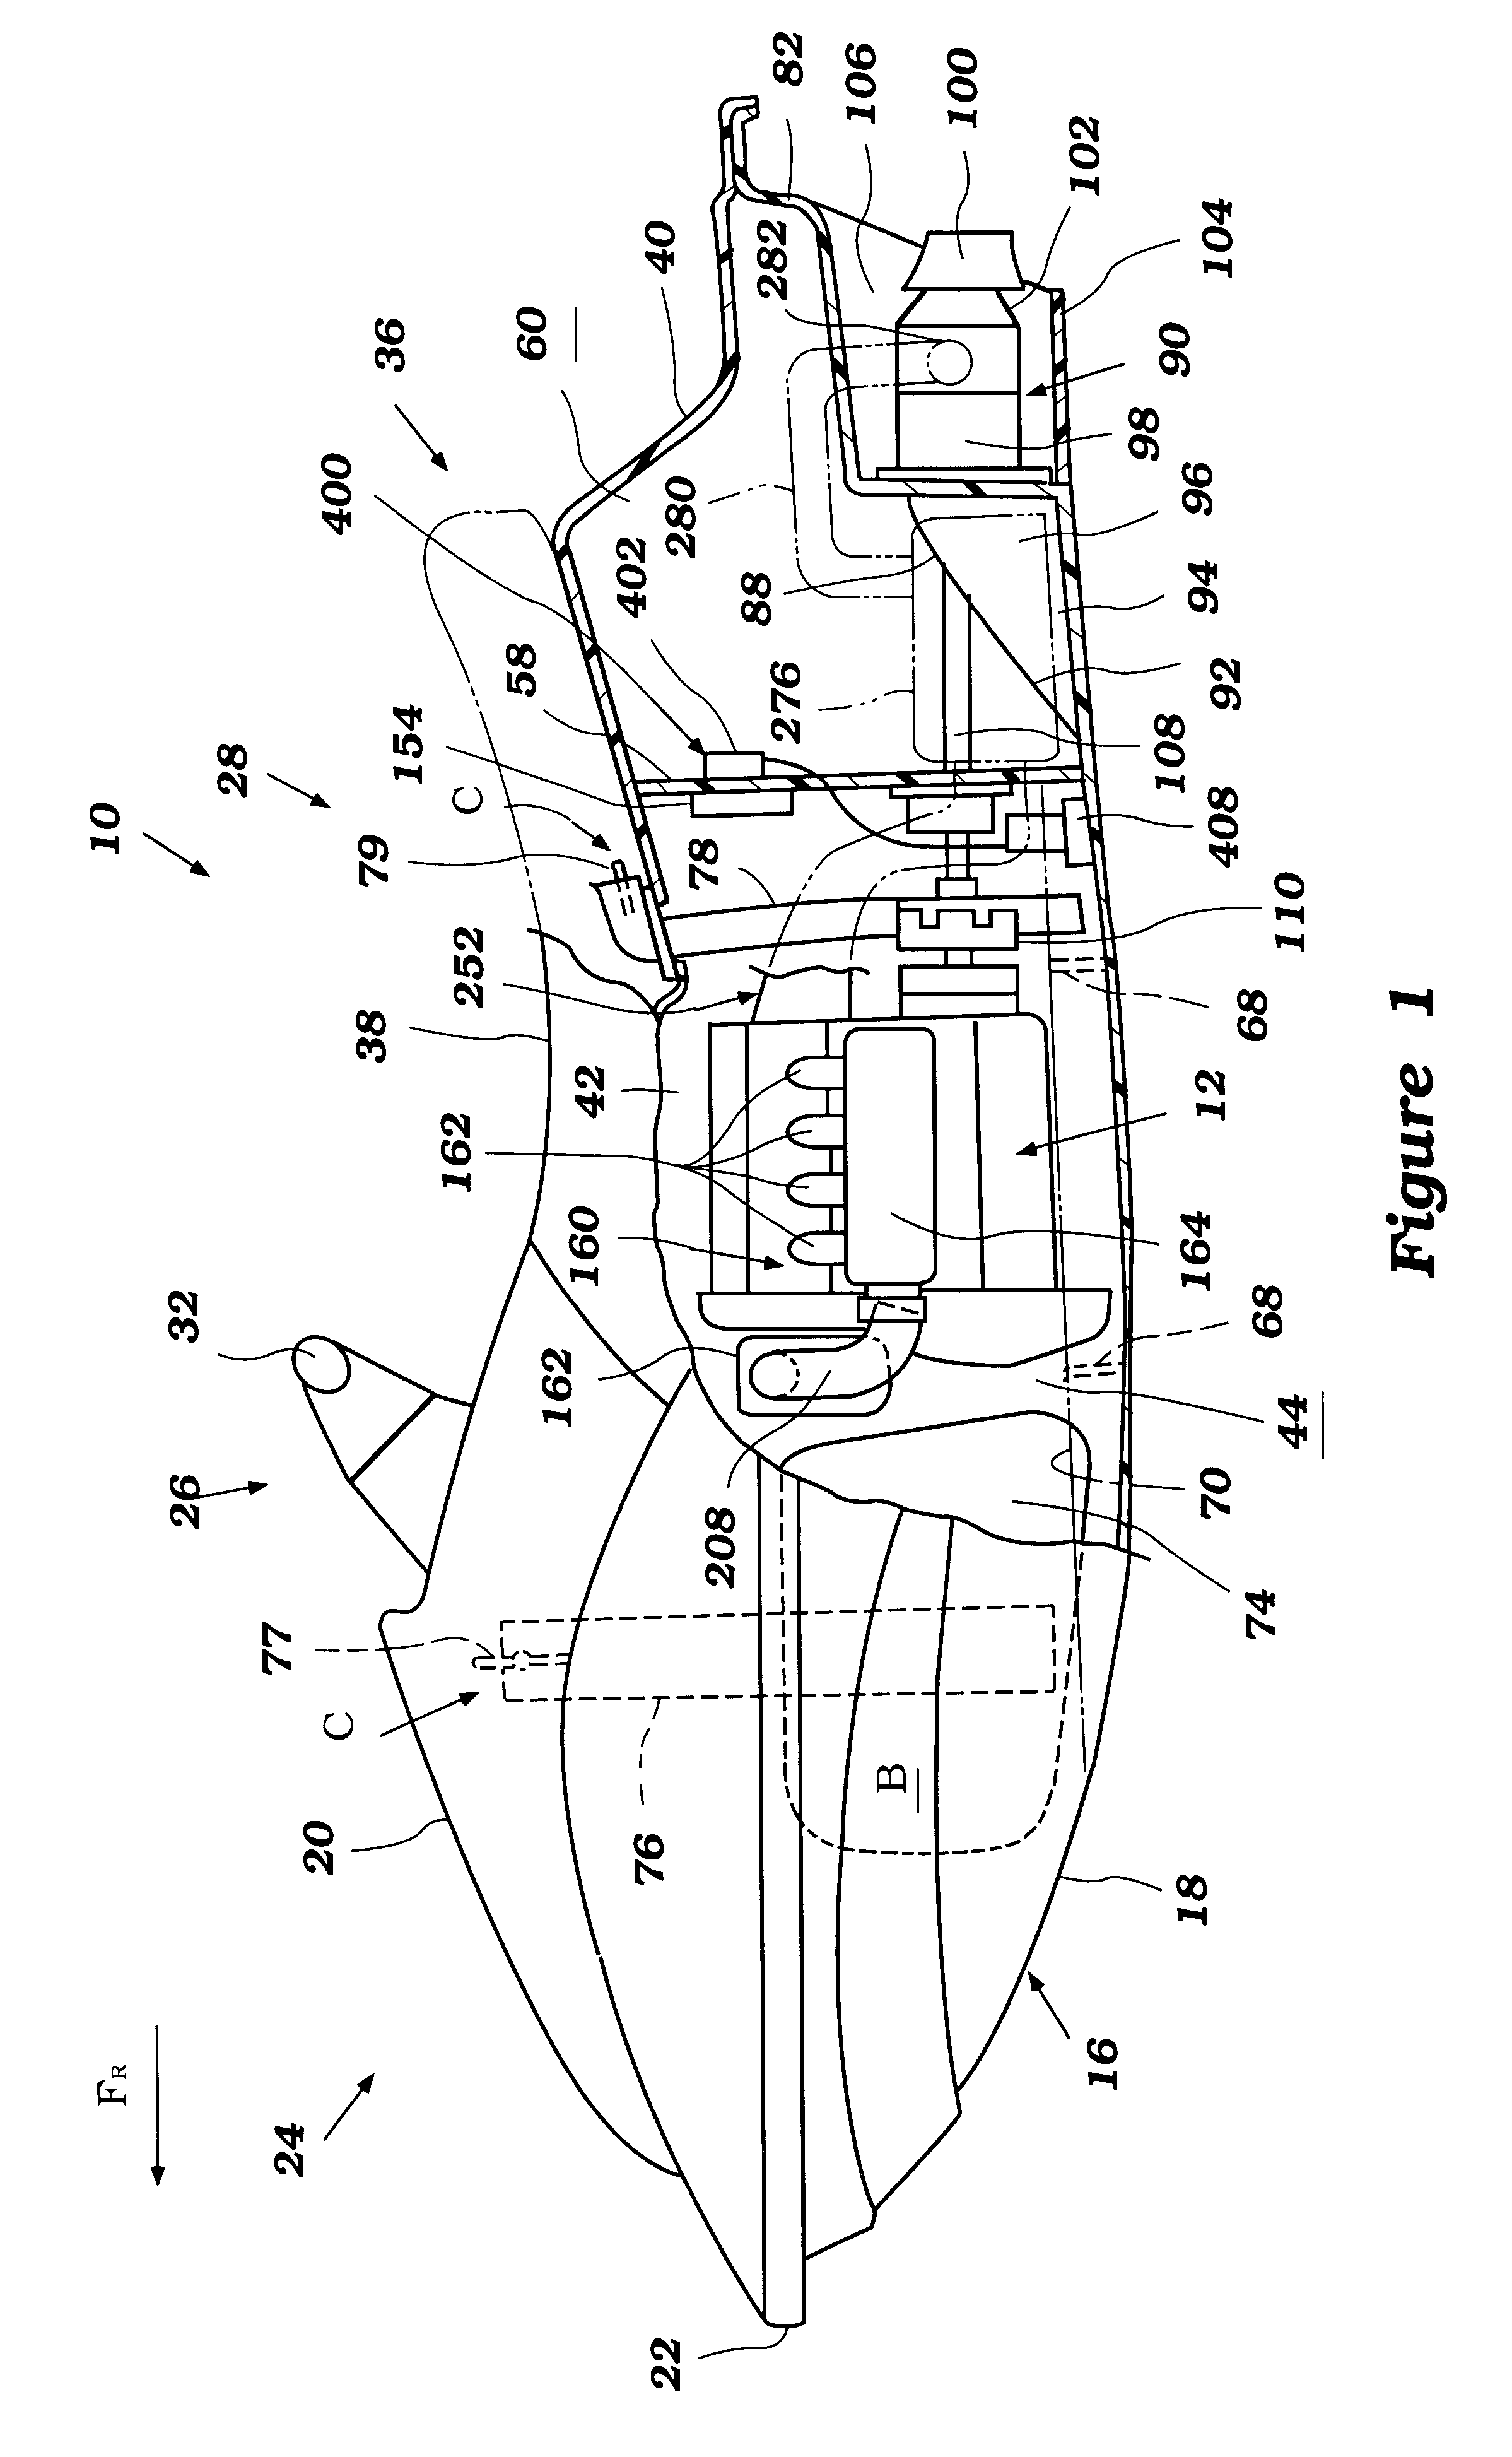 Vapor system arrangement for marine engine